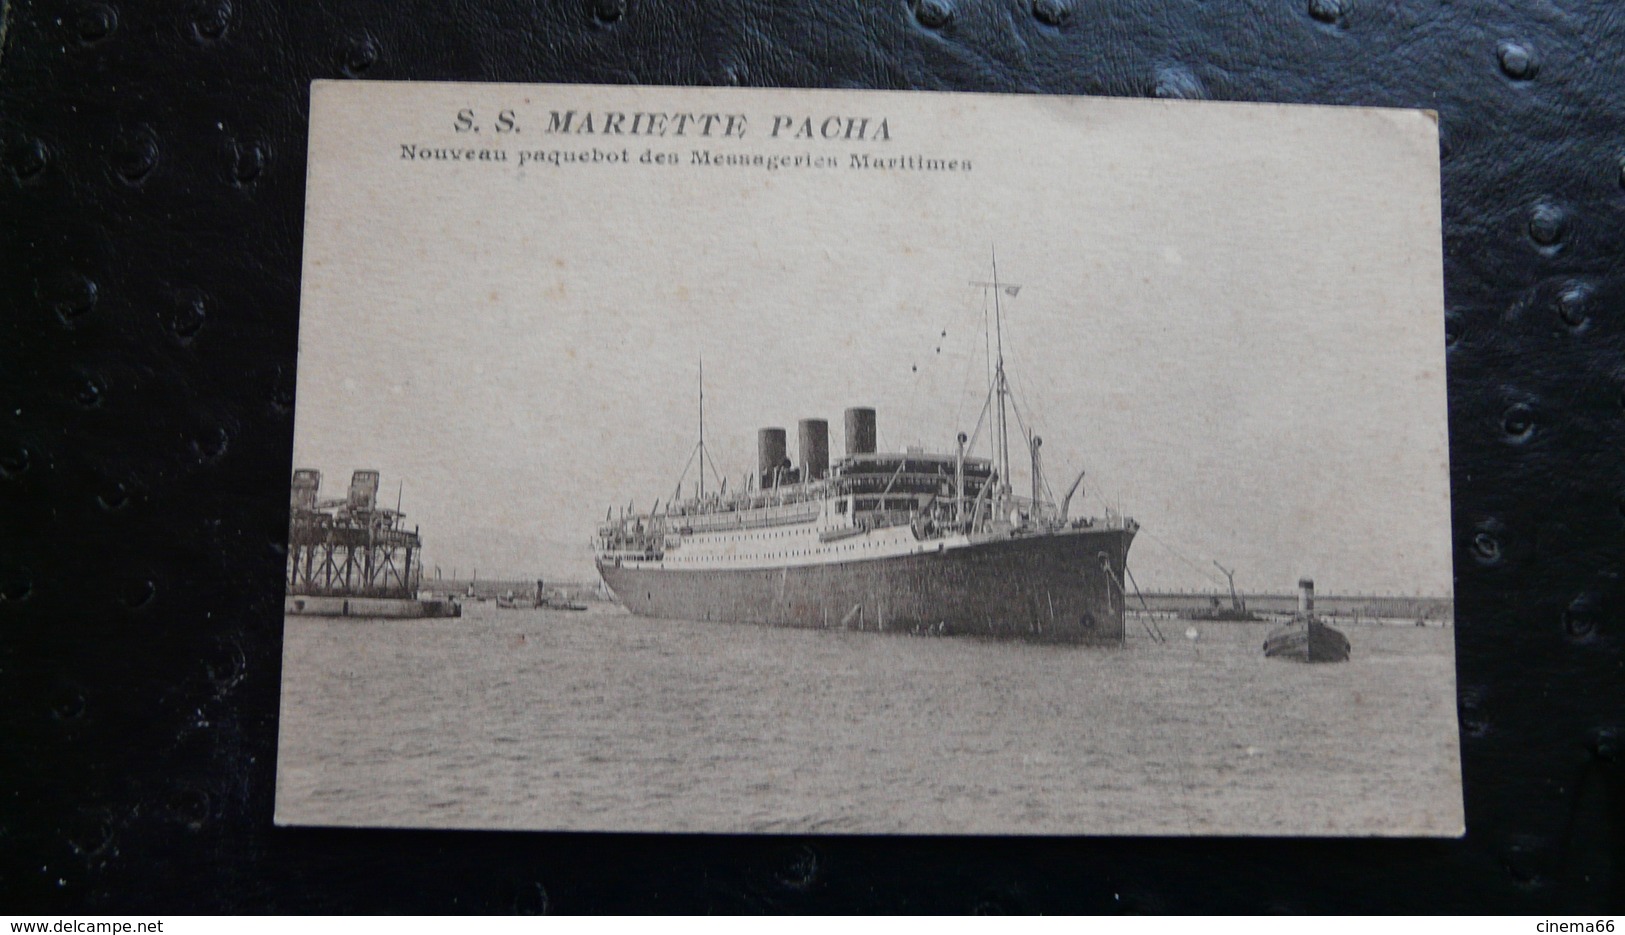 S.S. MARIETTE PACHA - Nouveau Paquebot Des Messageries Maritimes - Dampfer